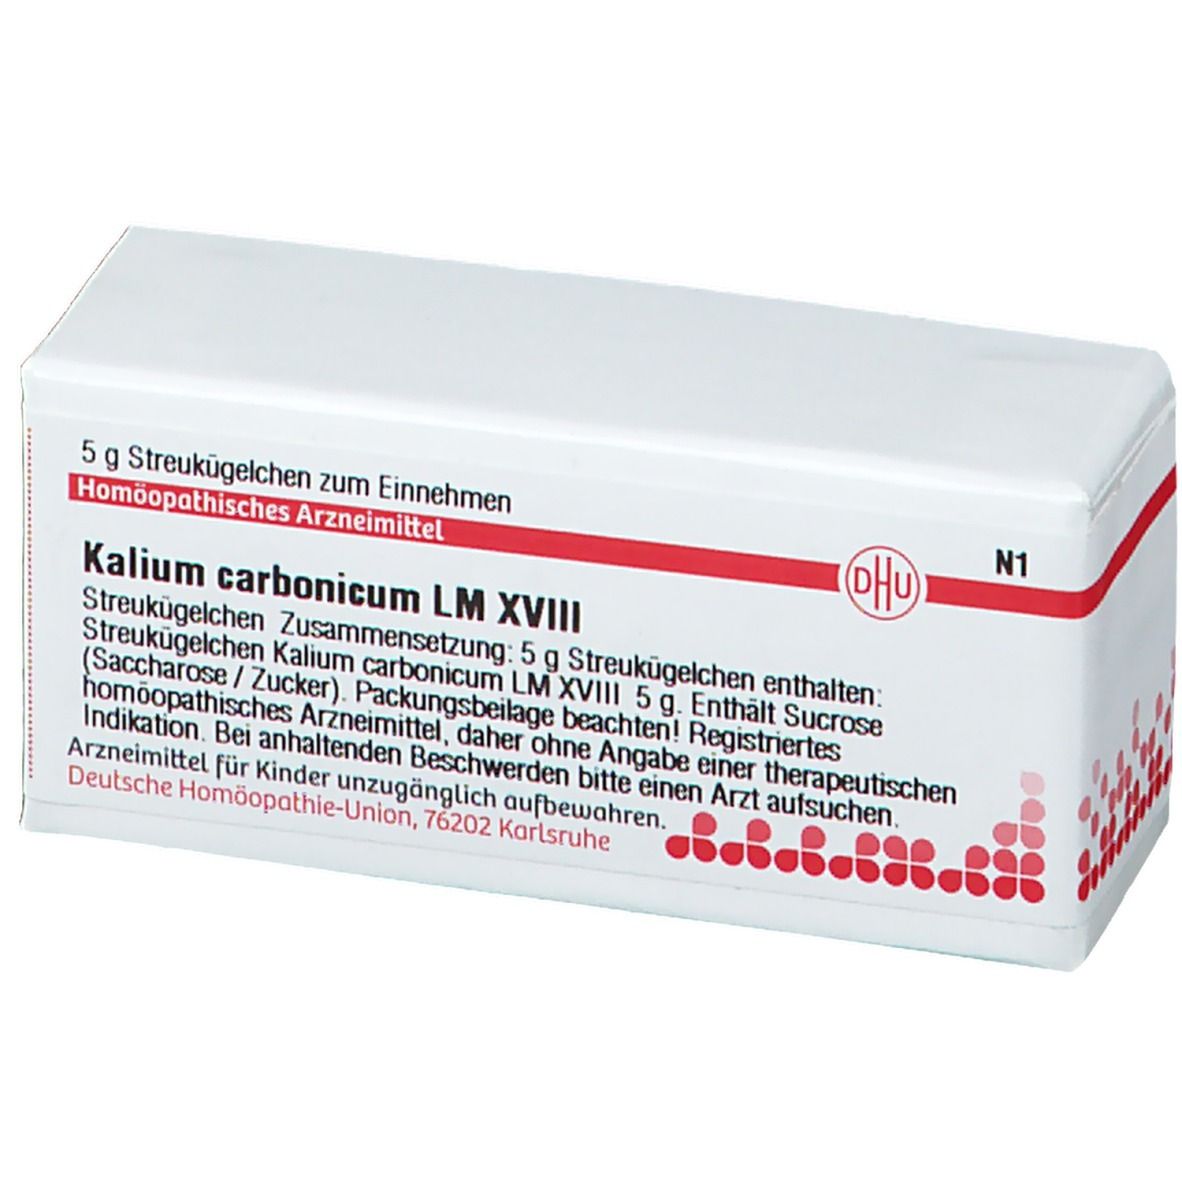 DHU Kalium Carbonicum LM XVIII